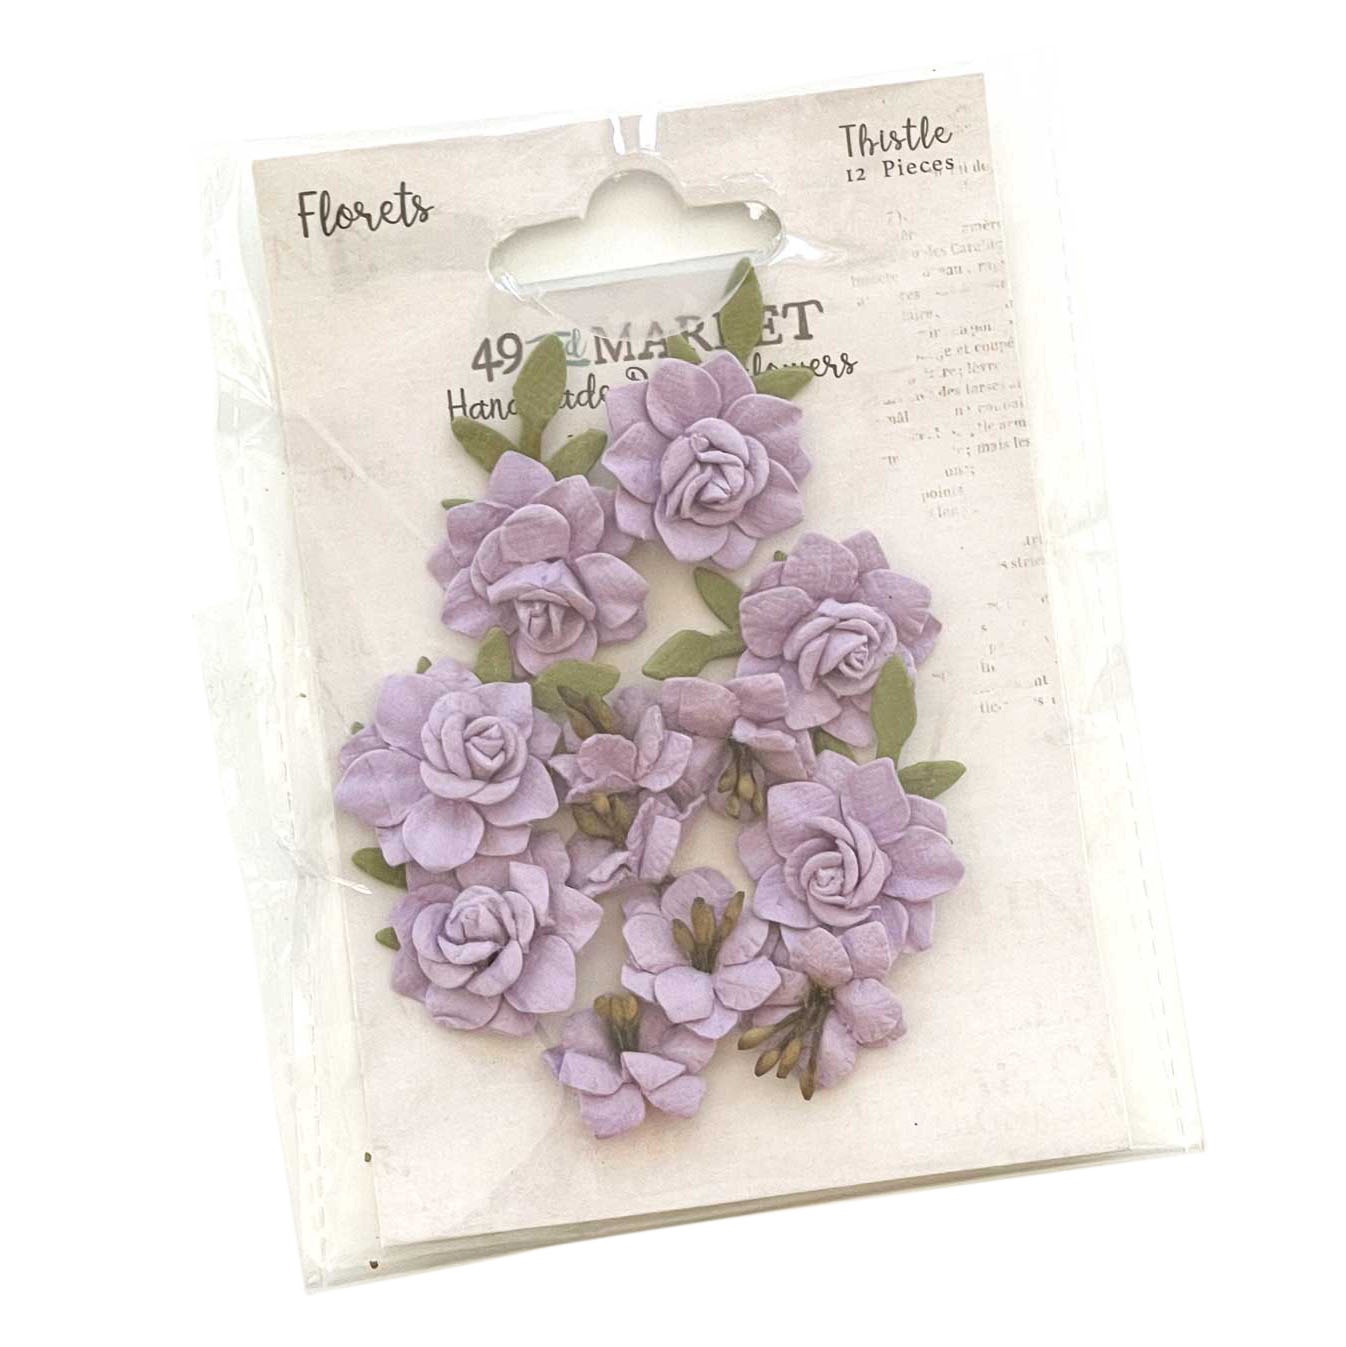 Bild von 49 And Market Florets Paper Flowers-Thistle